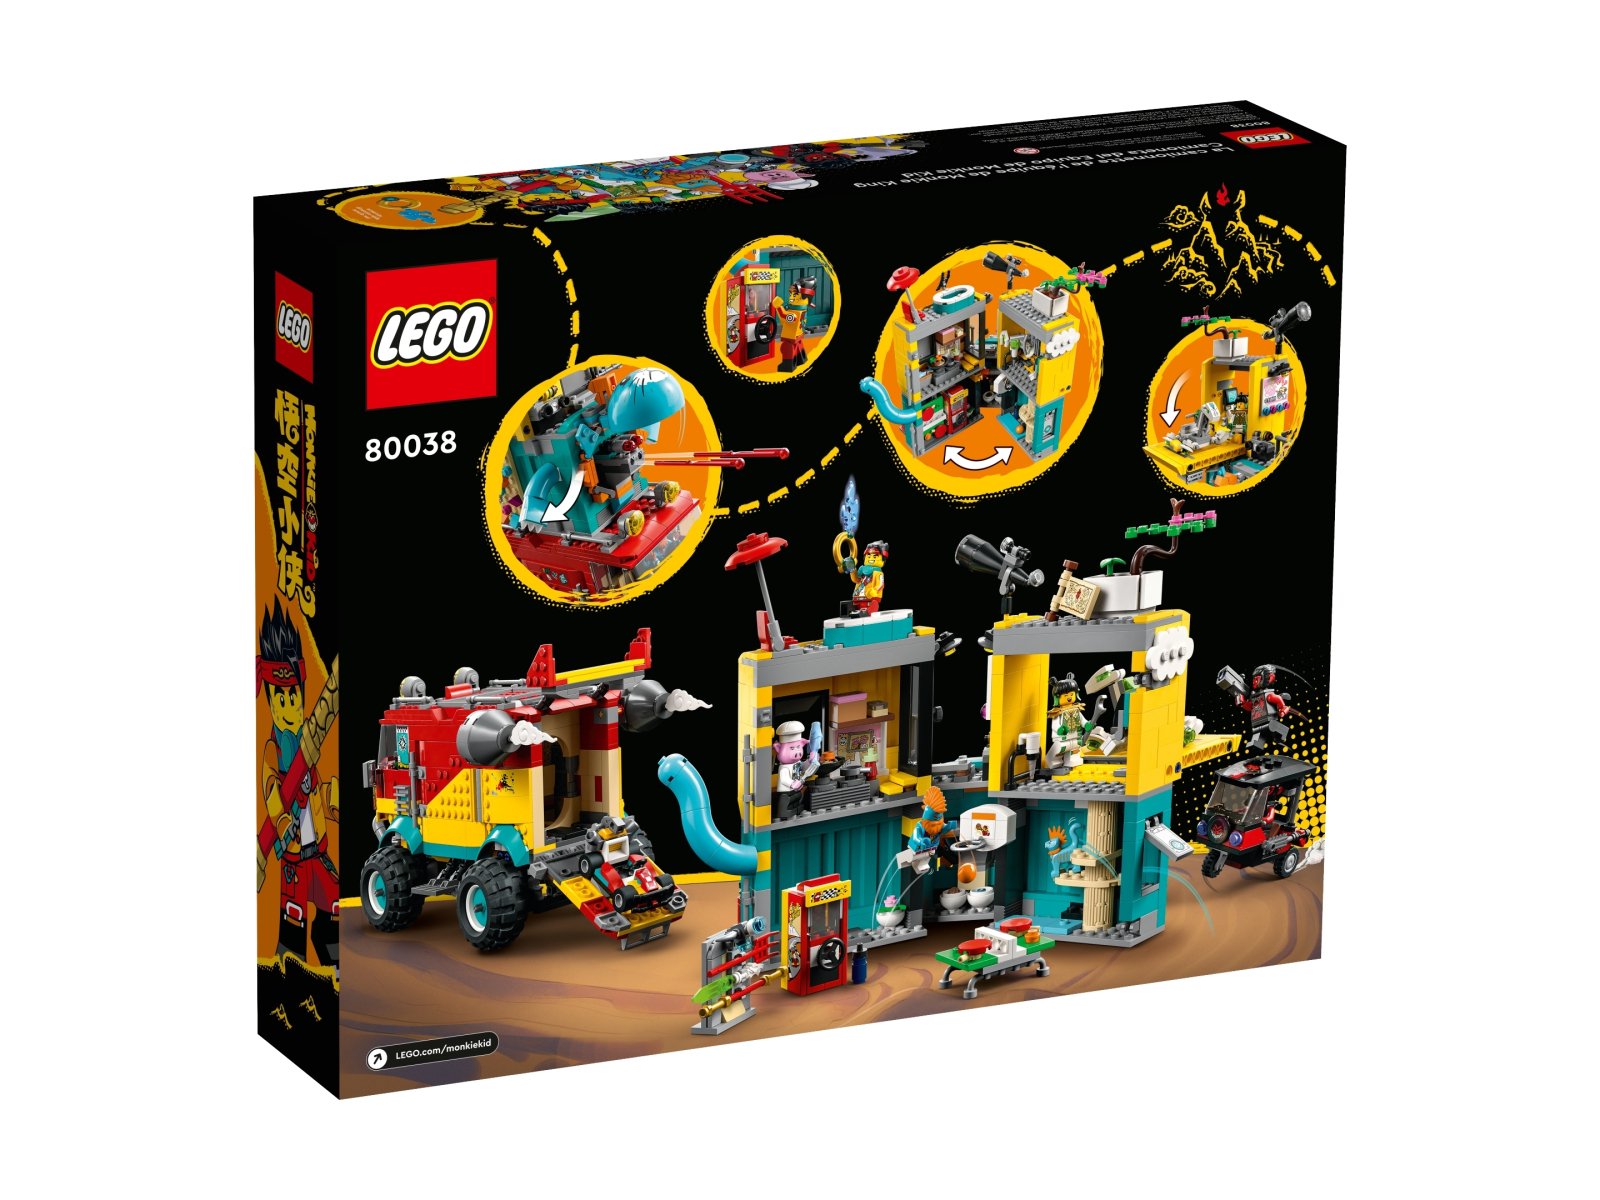 LEGO 80038 Monkie Kid Furgonetka ekipy Monkie Kida